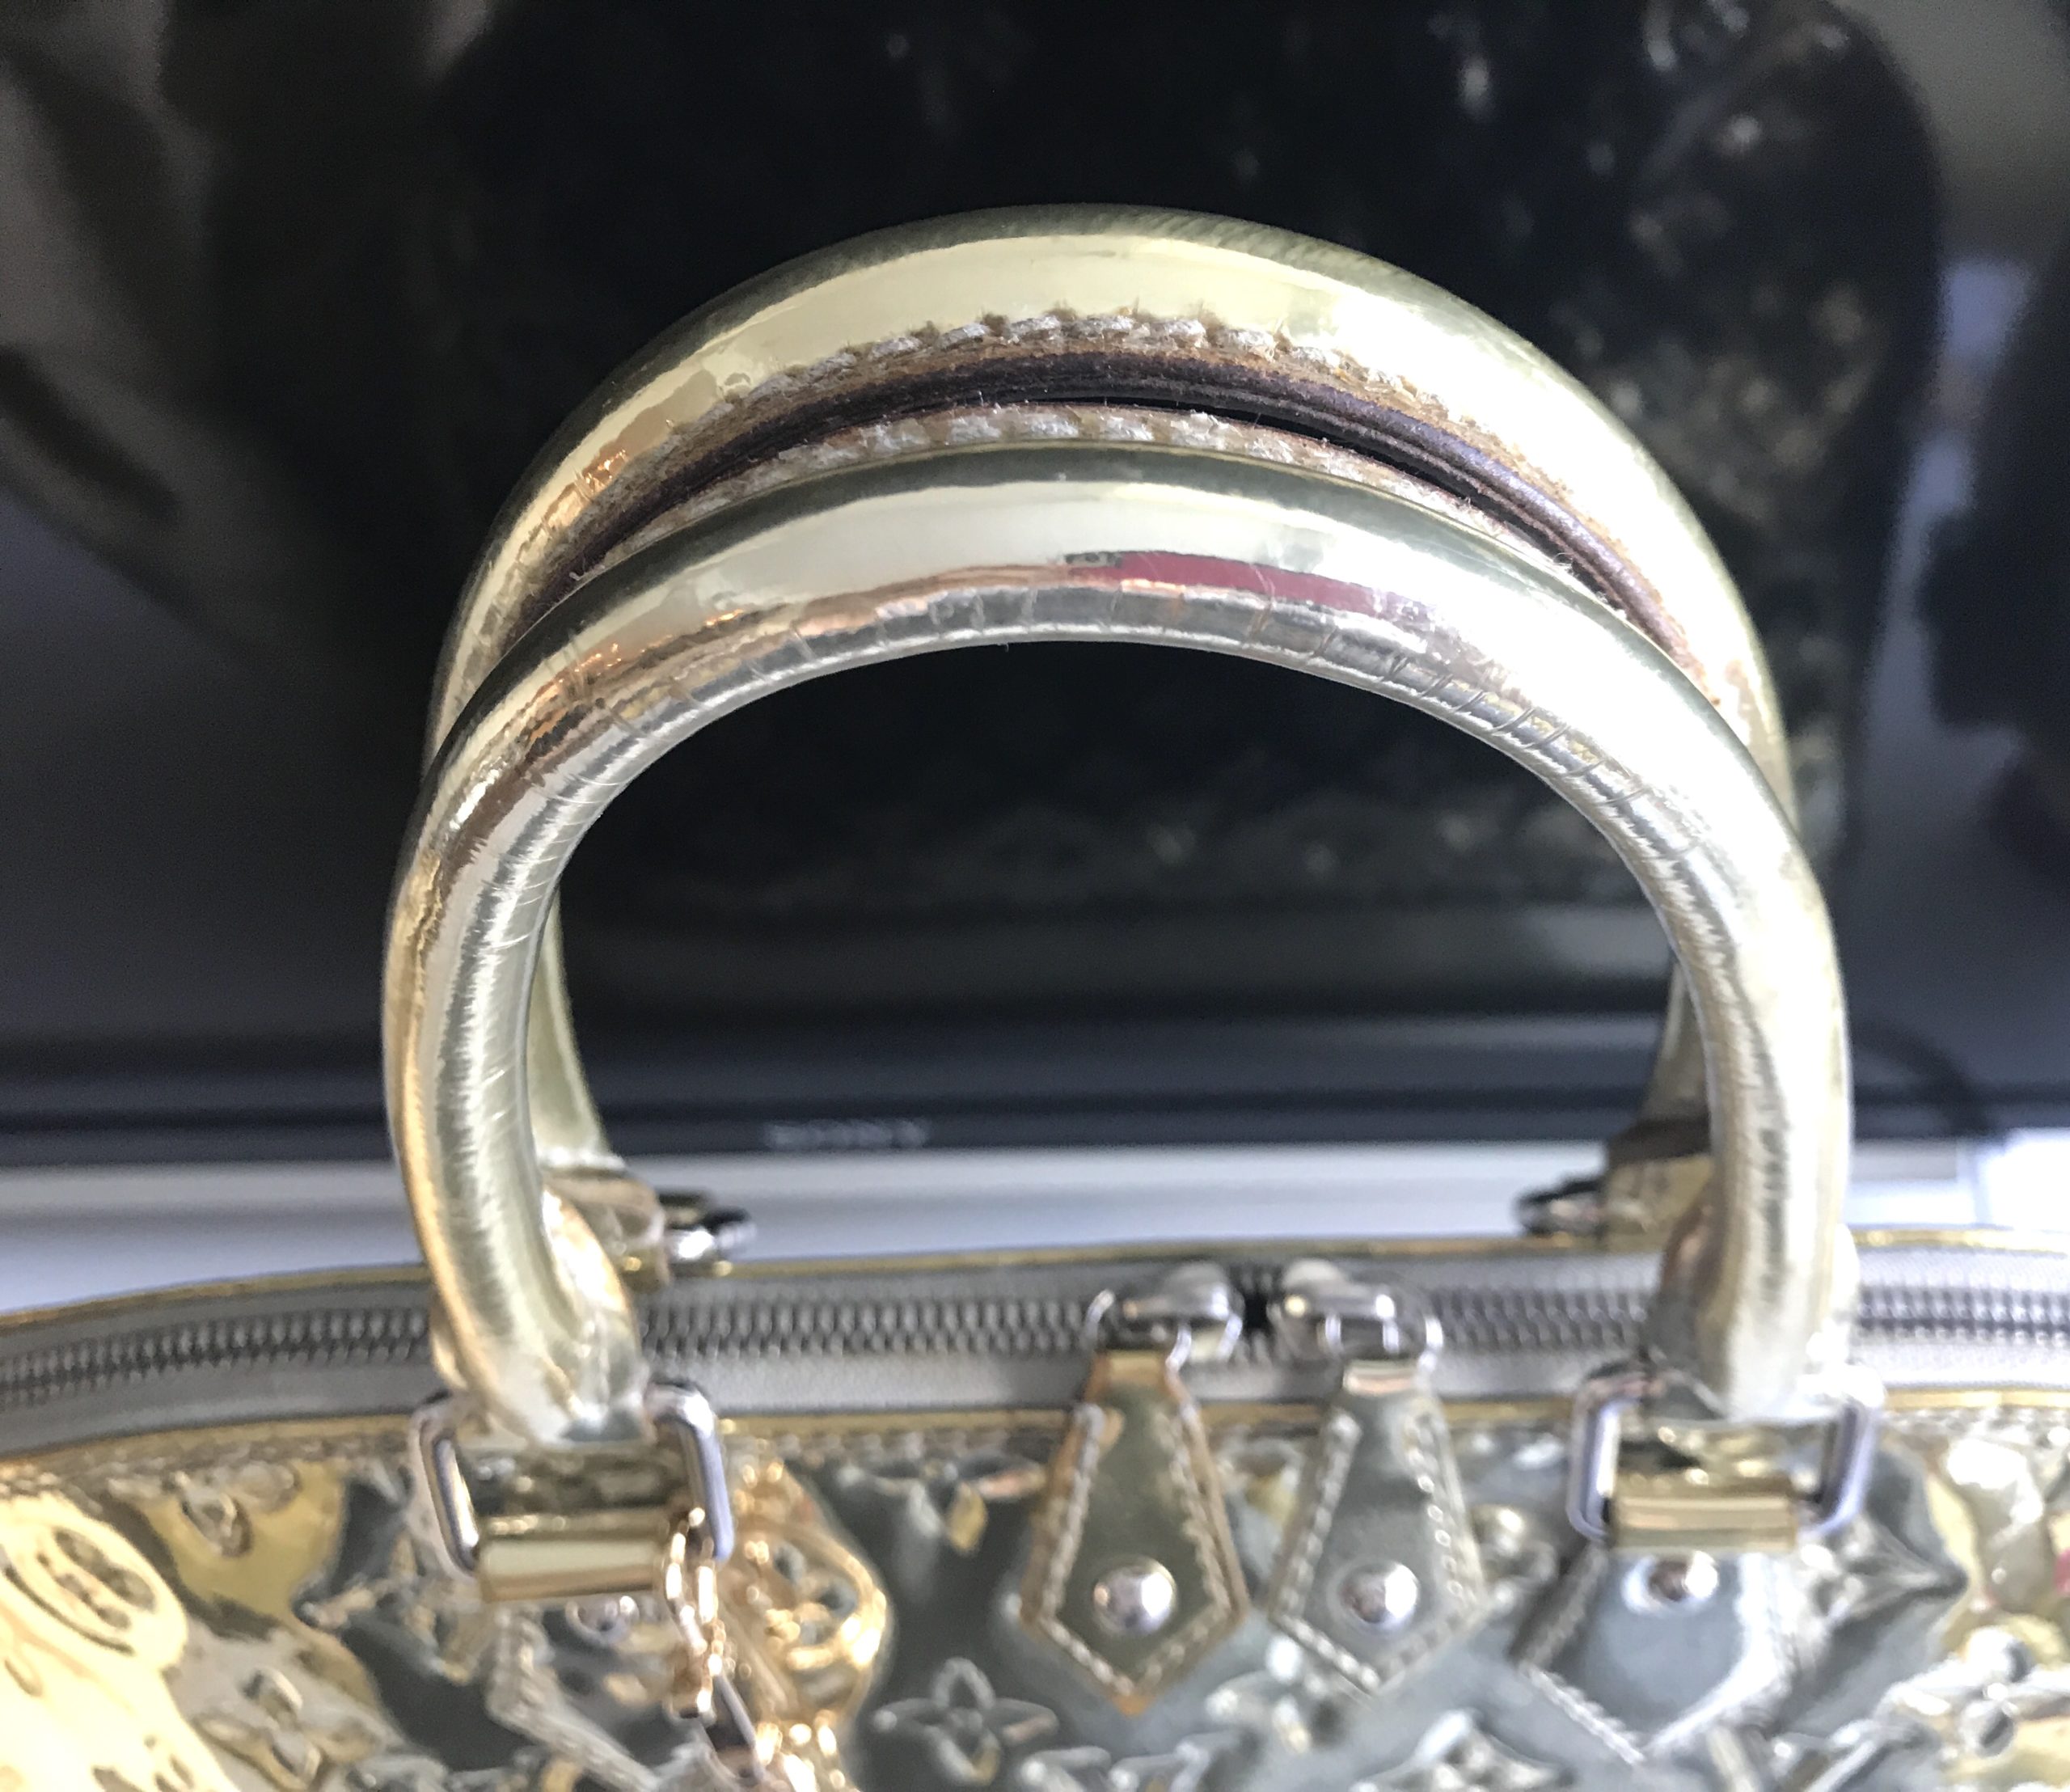 Louis Vuitton Miroir Mirror Gold Alma GM Handbag